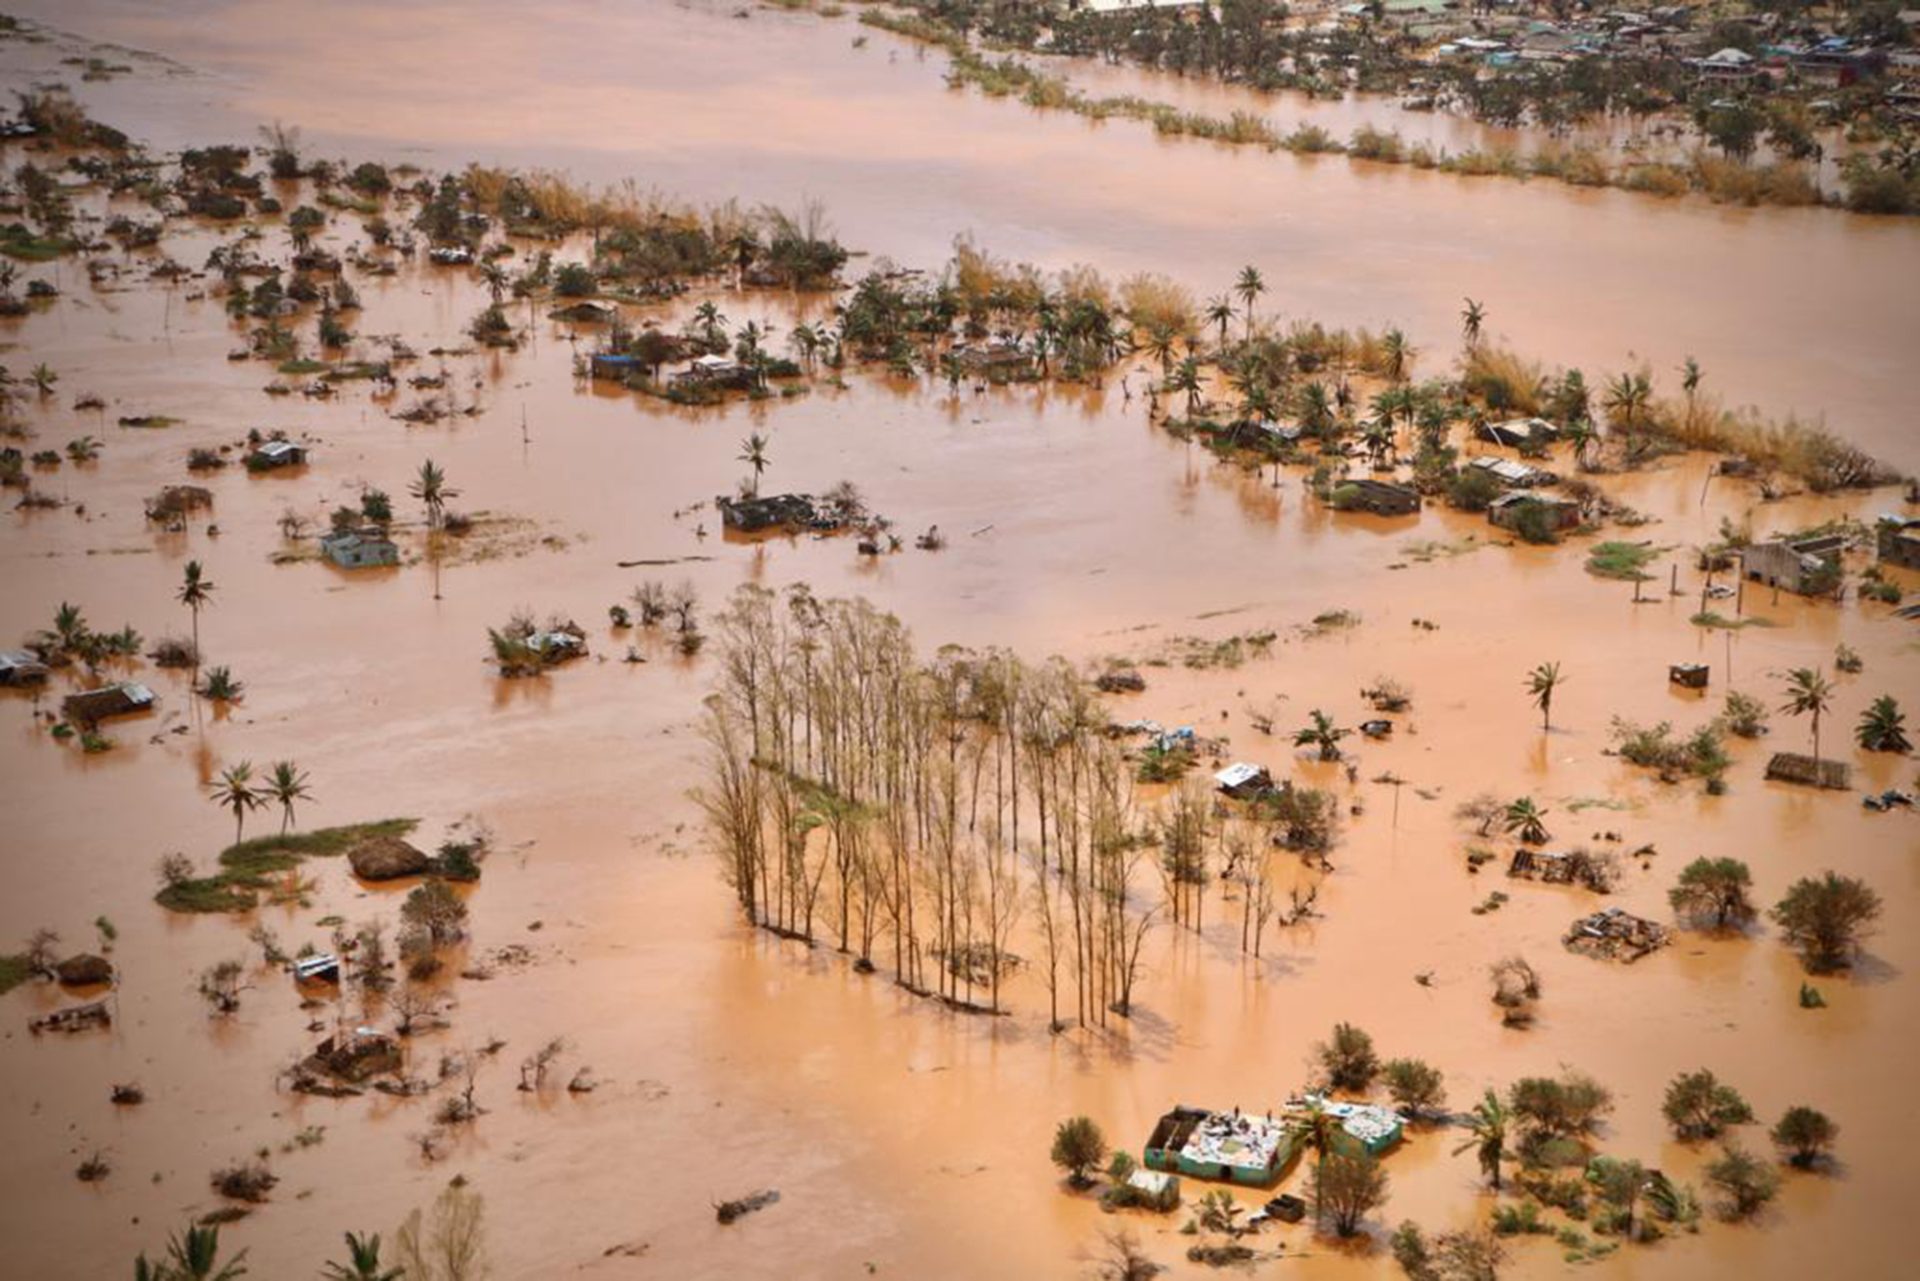 Moçambique. A calamidade que quase apagou do mapa a cidade da Beira